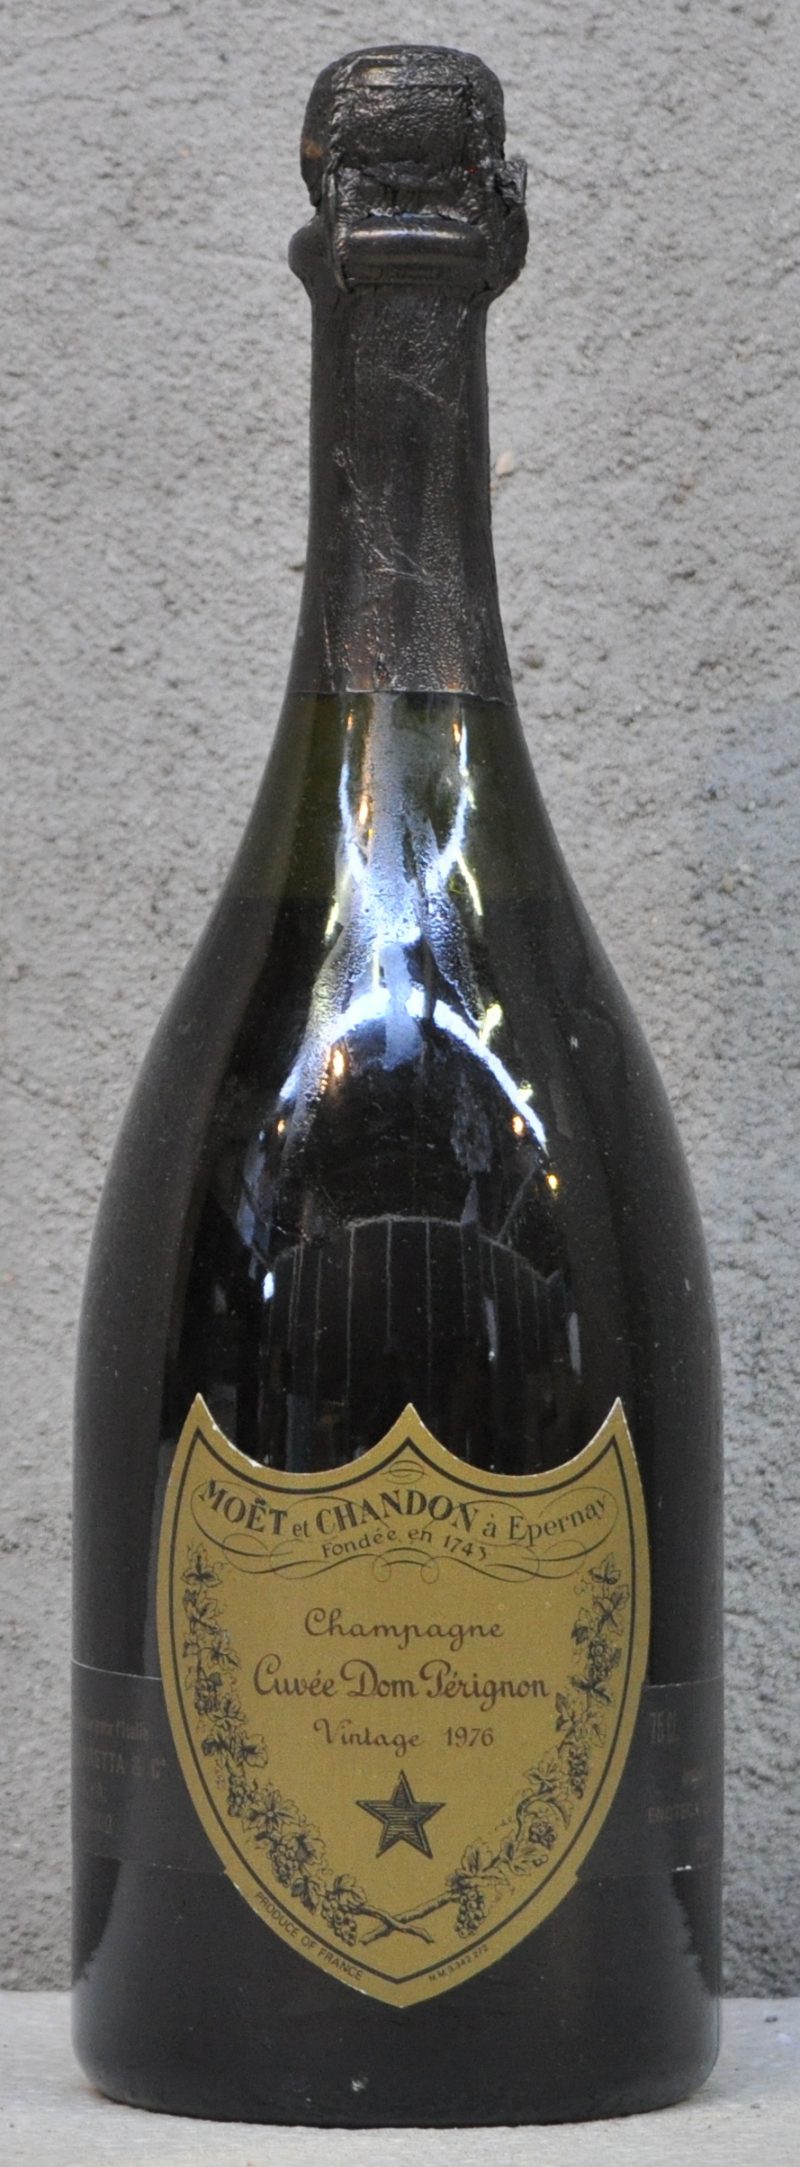 Champagne Cuvée Dom Pérignon Brut   Moët & Chandon, Epernay M.O.  1976  aantal: 1 bt